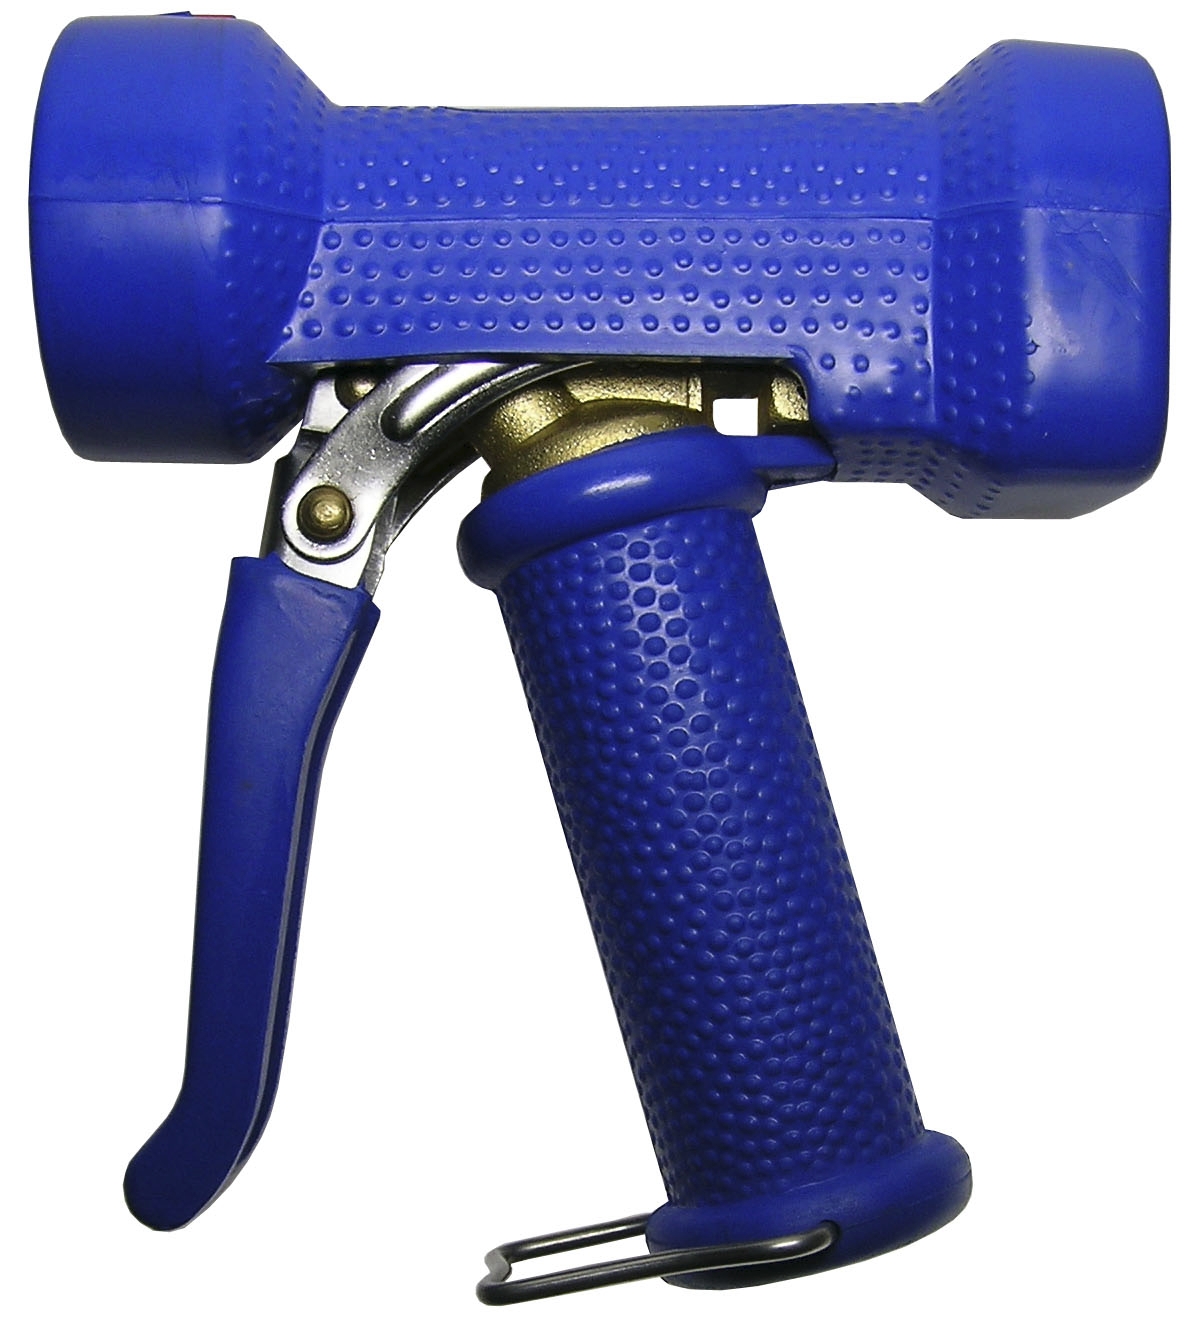  Pistolet de lavage bleu - Série AKMN 